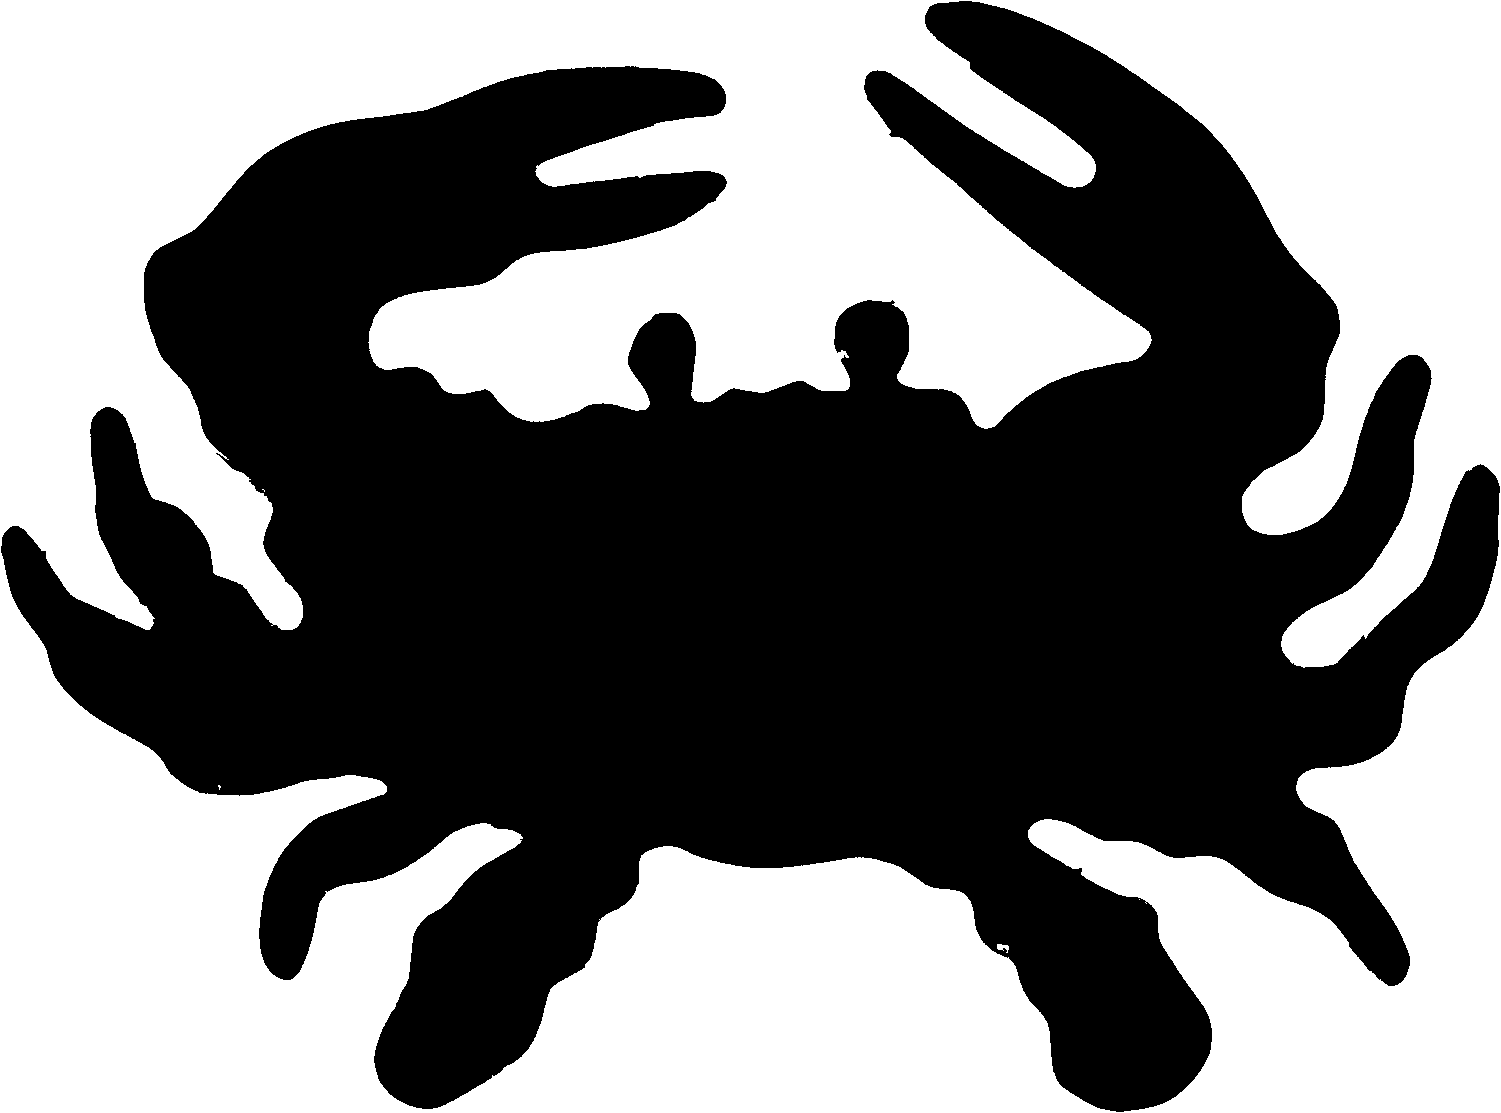 Crabs crab clipart free clip art images clipartwiz - Clipartix